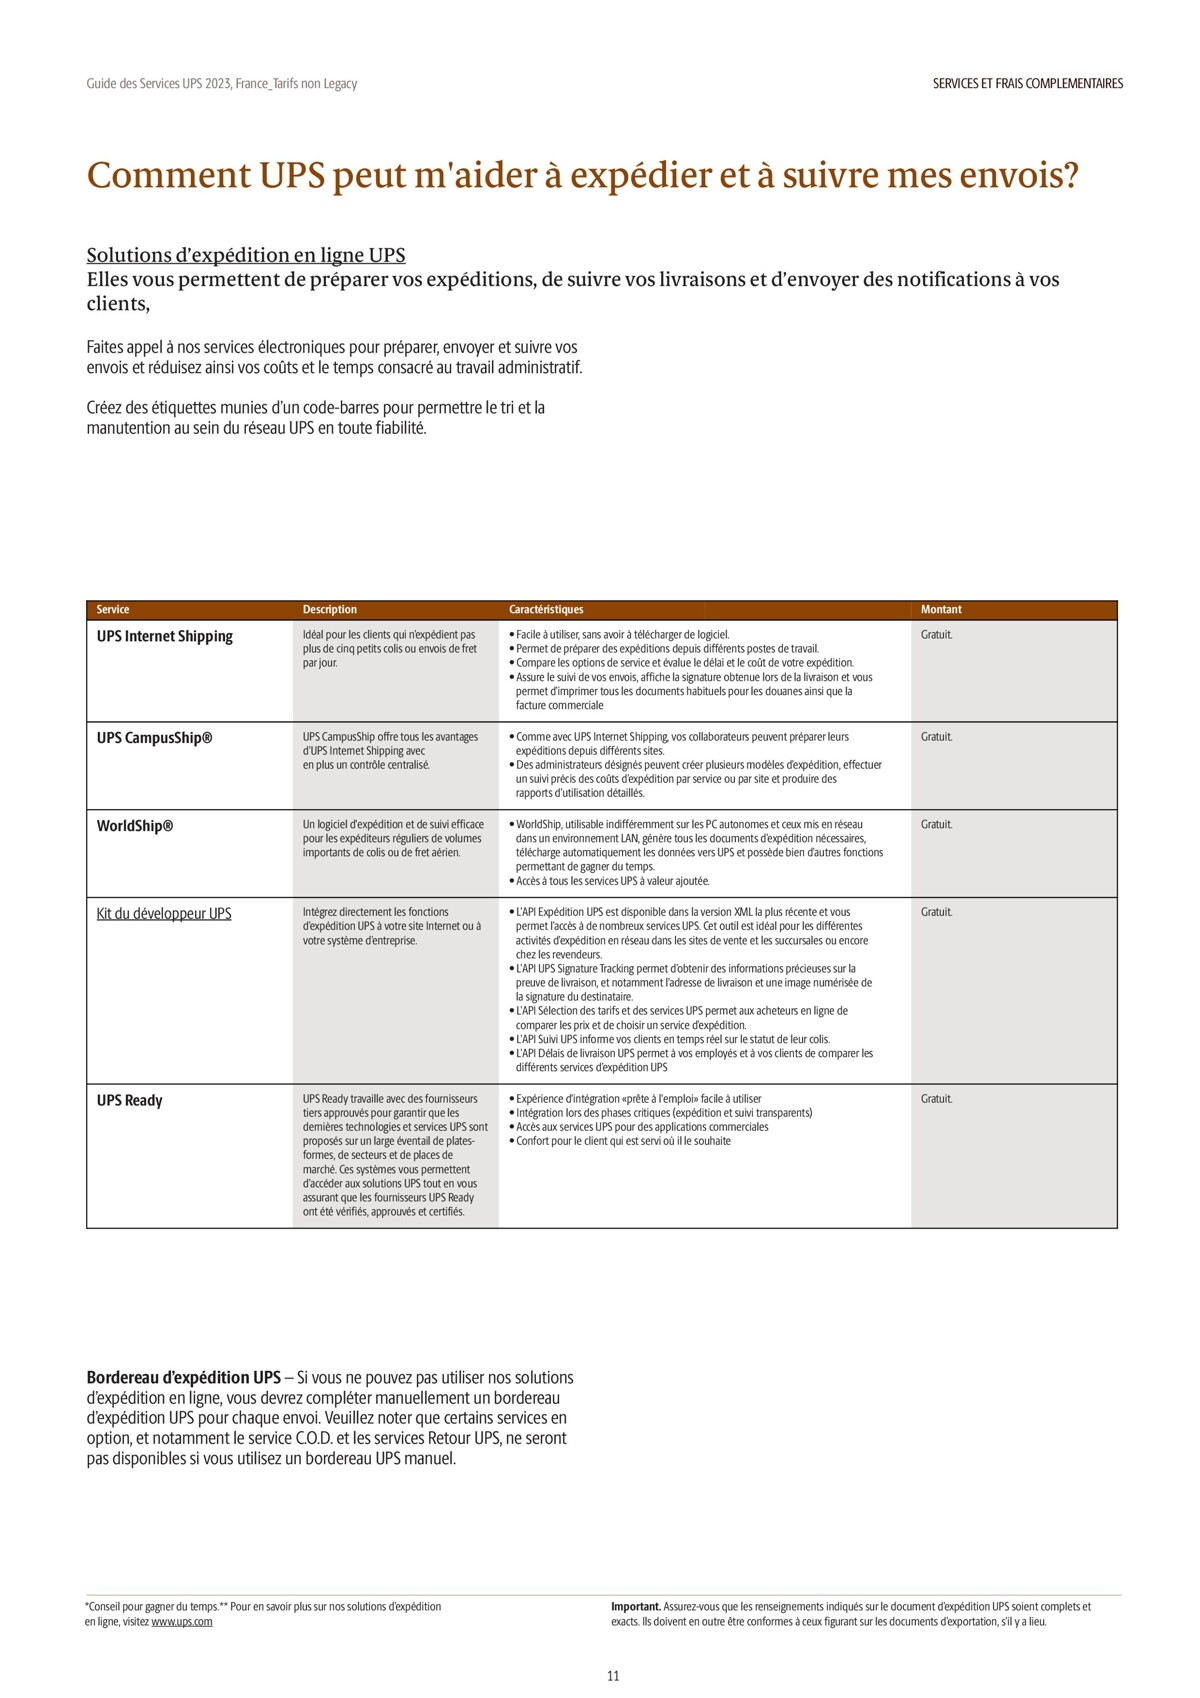 Catalogue Guide des Services 2023, page 00011